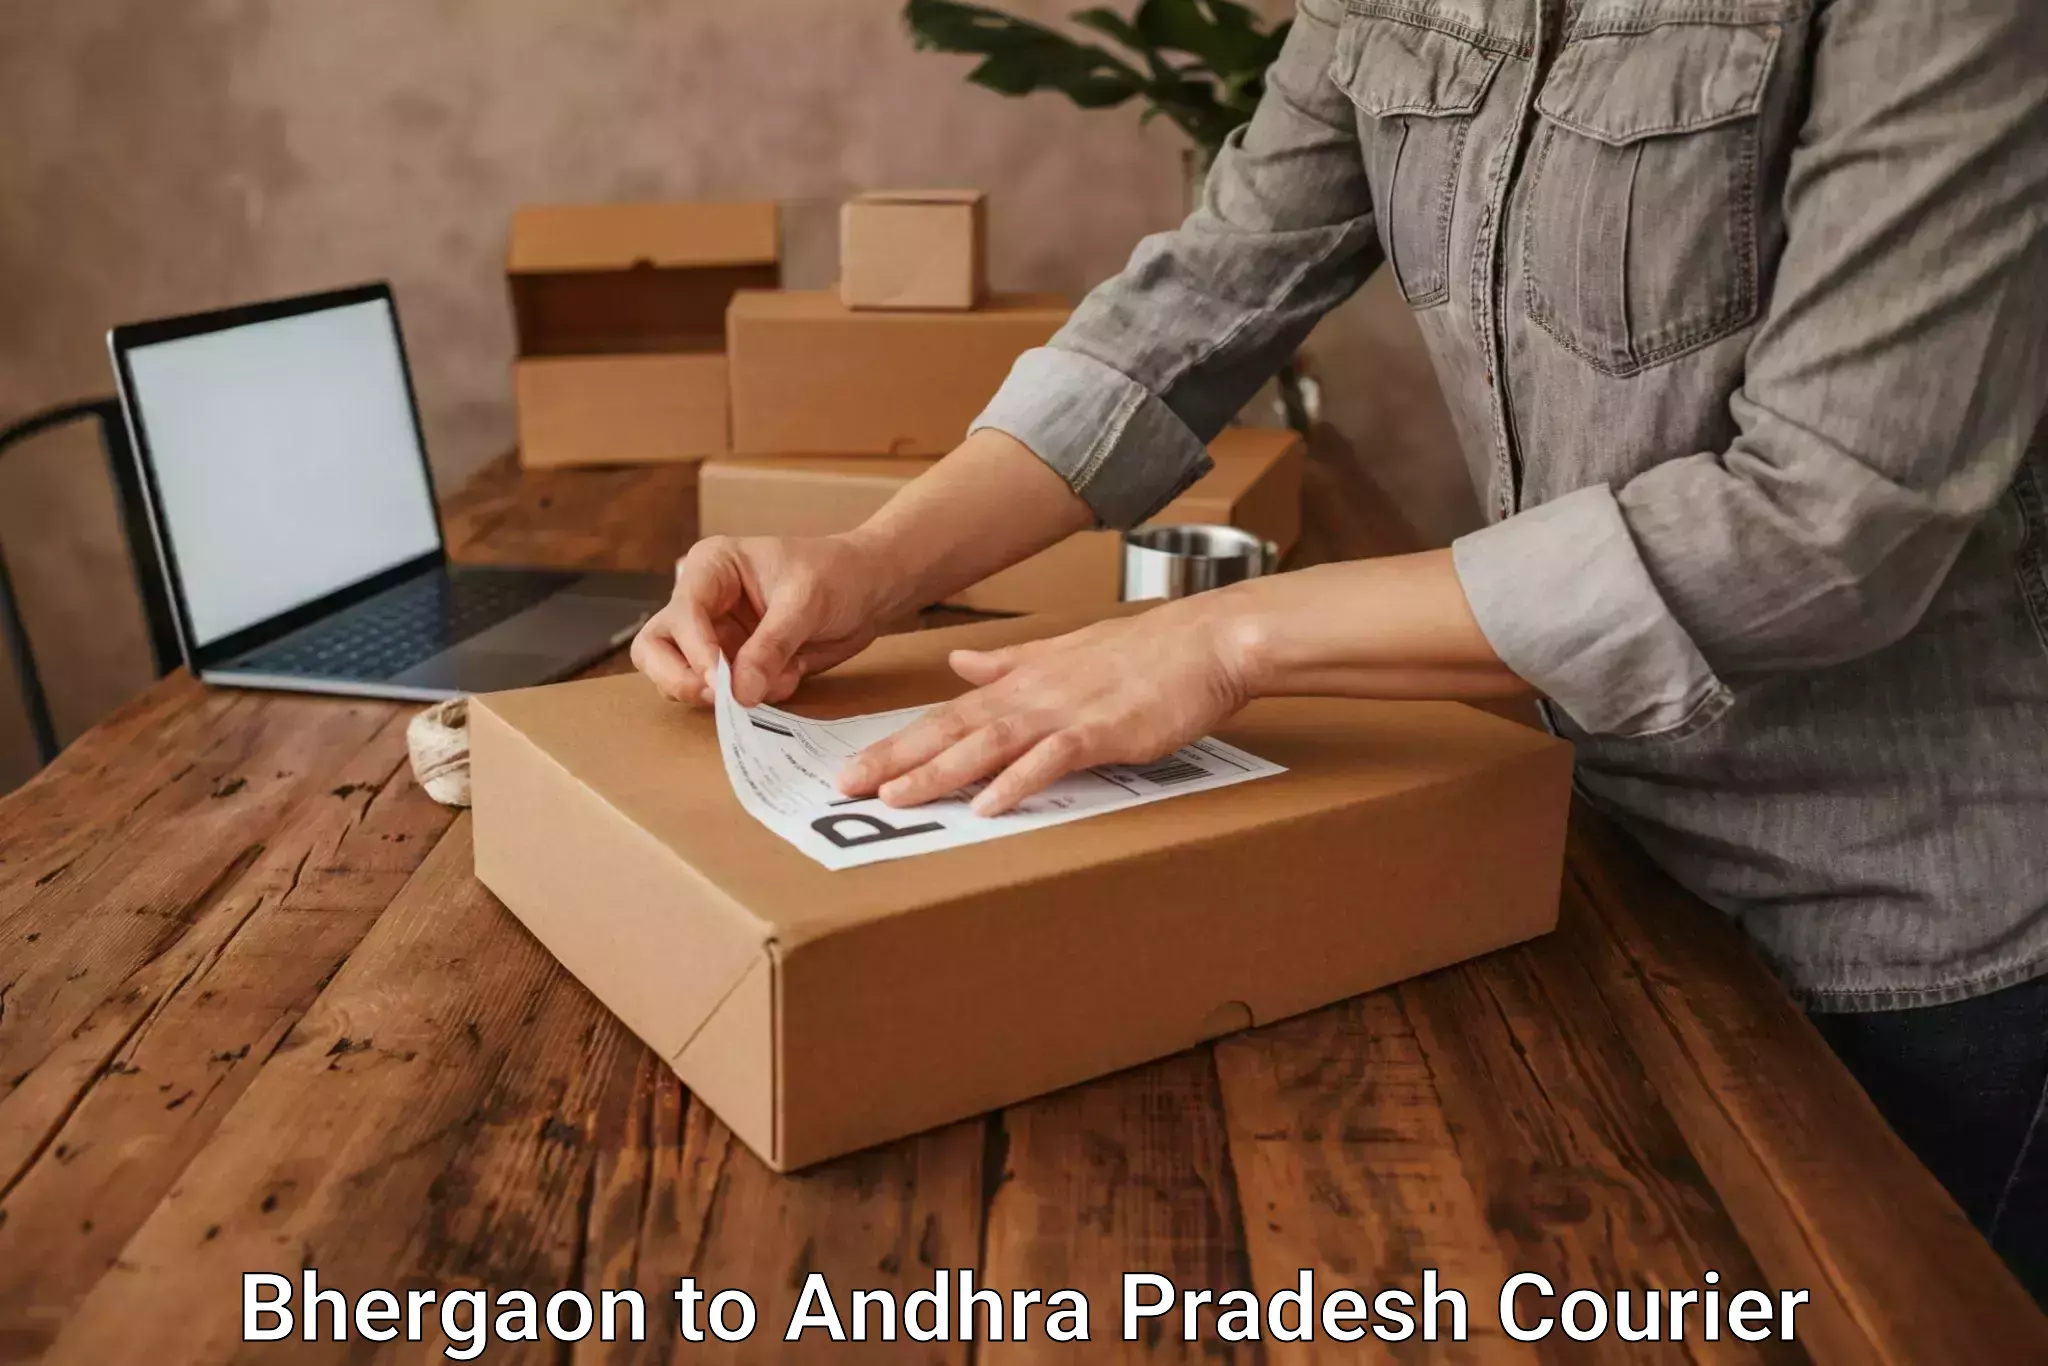 Fragile item shipping Bhergaon to Vijayawada